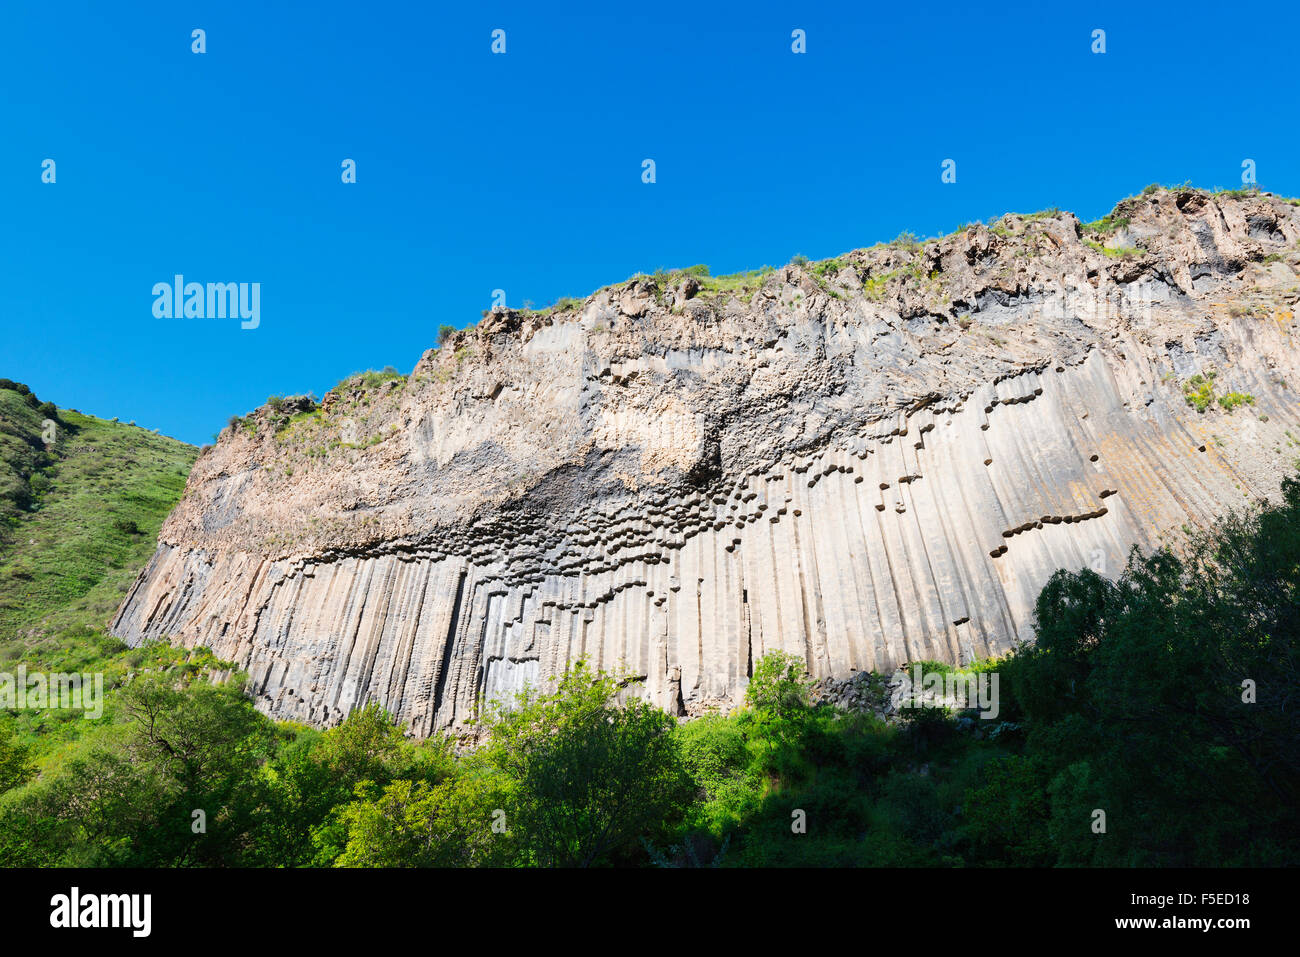 Symphonie de pierres, colonnes de basalte, UNESCO World Heritage Site, Garni, province de Kotayk, Arménie, Caucase, Asie centrale, Asie Banque D'Images